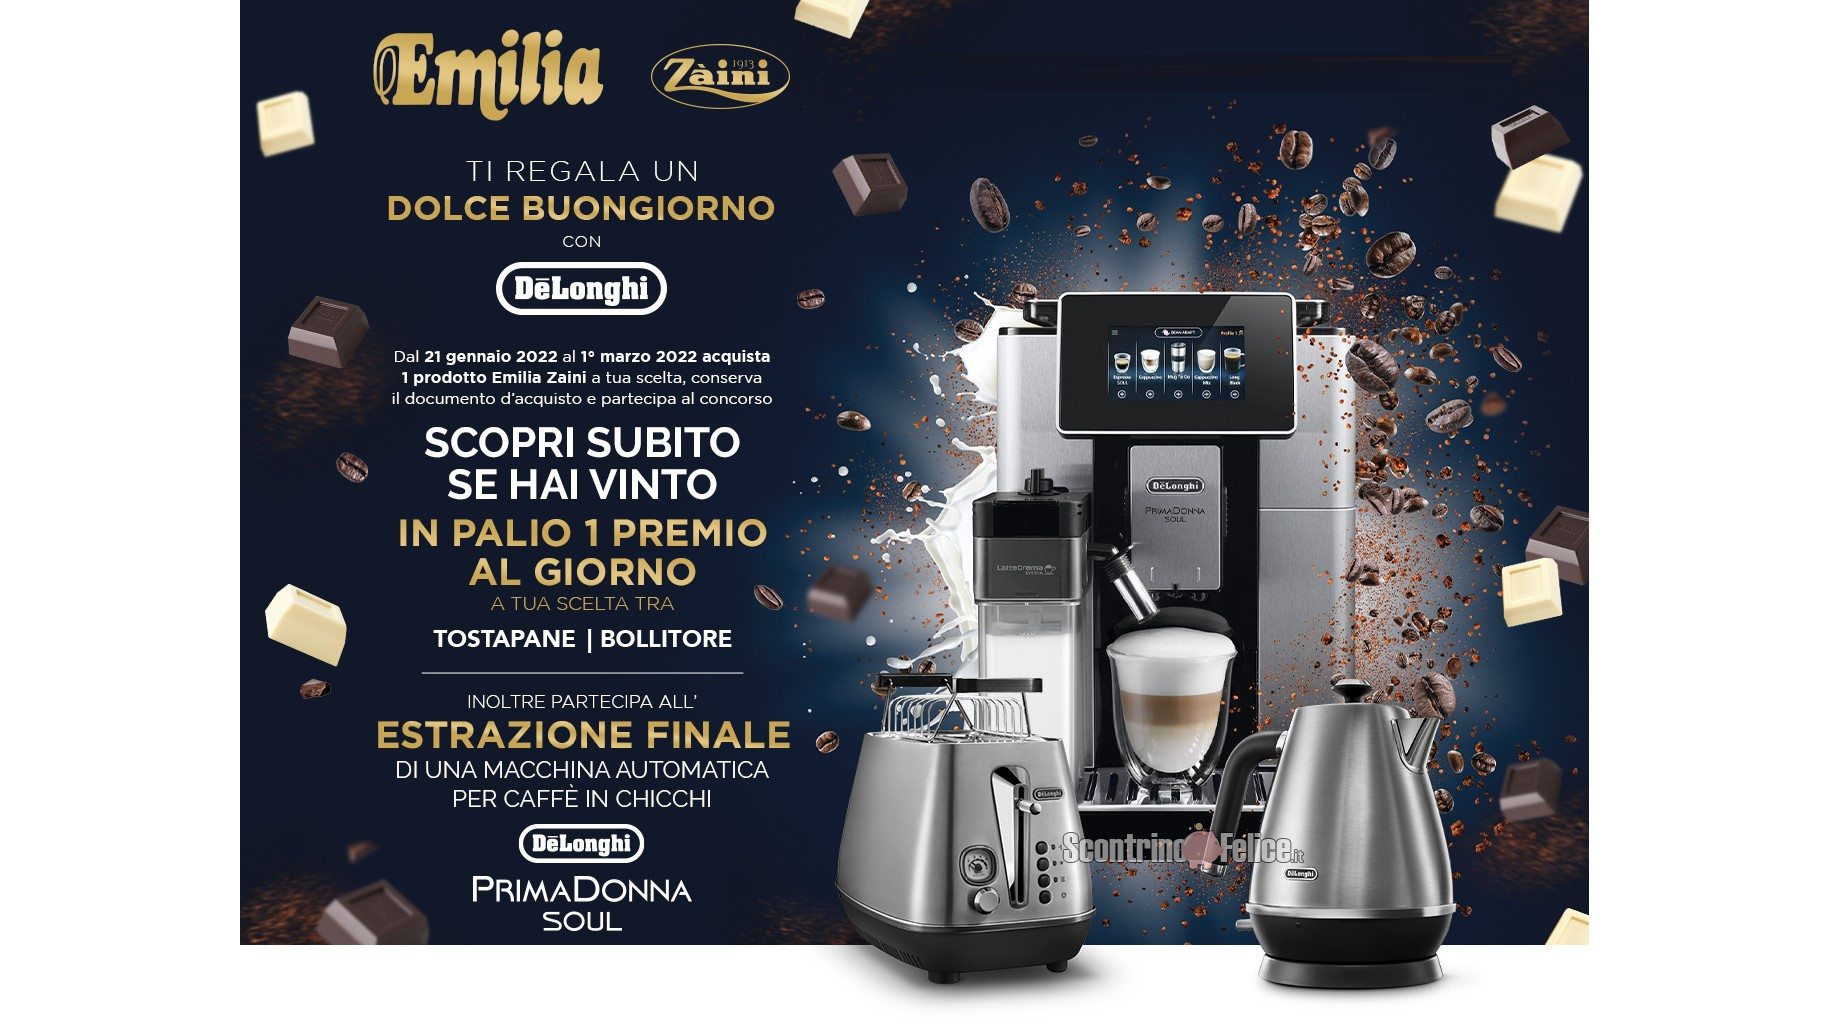 Concorso “Emilia Zaini ti regala un dolce buongiorno”: vinci bollitore, tostapane e macchine per caffè De’Longhi